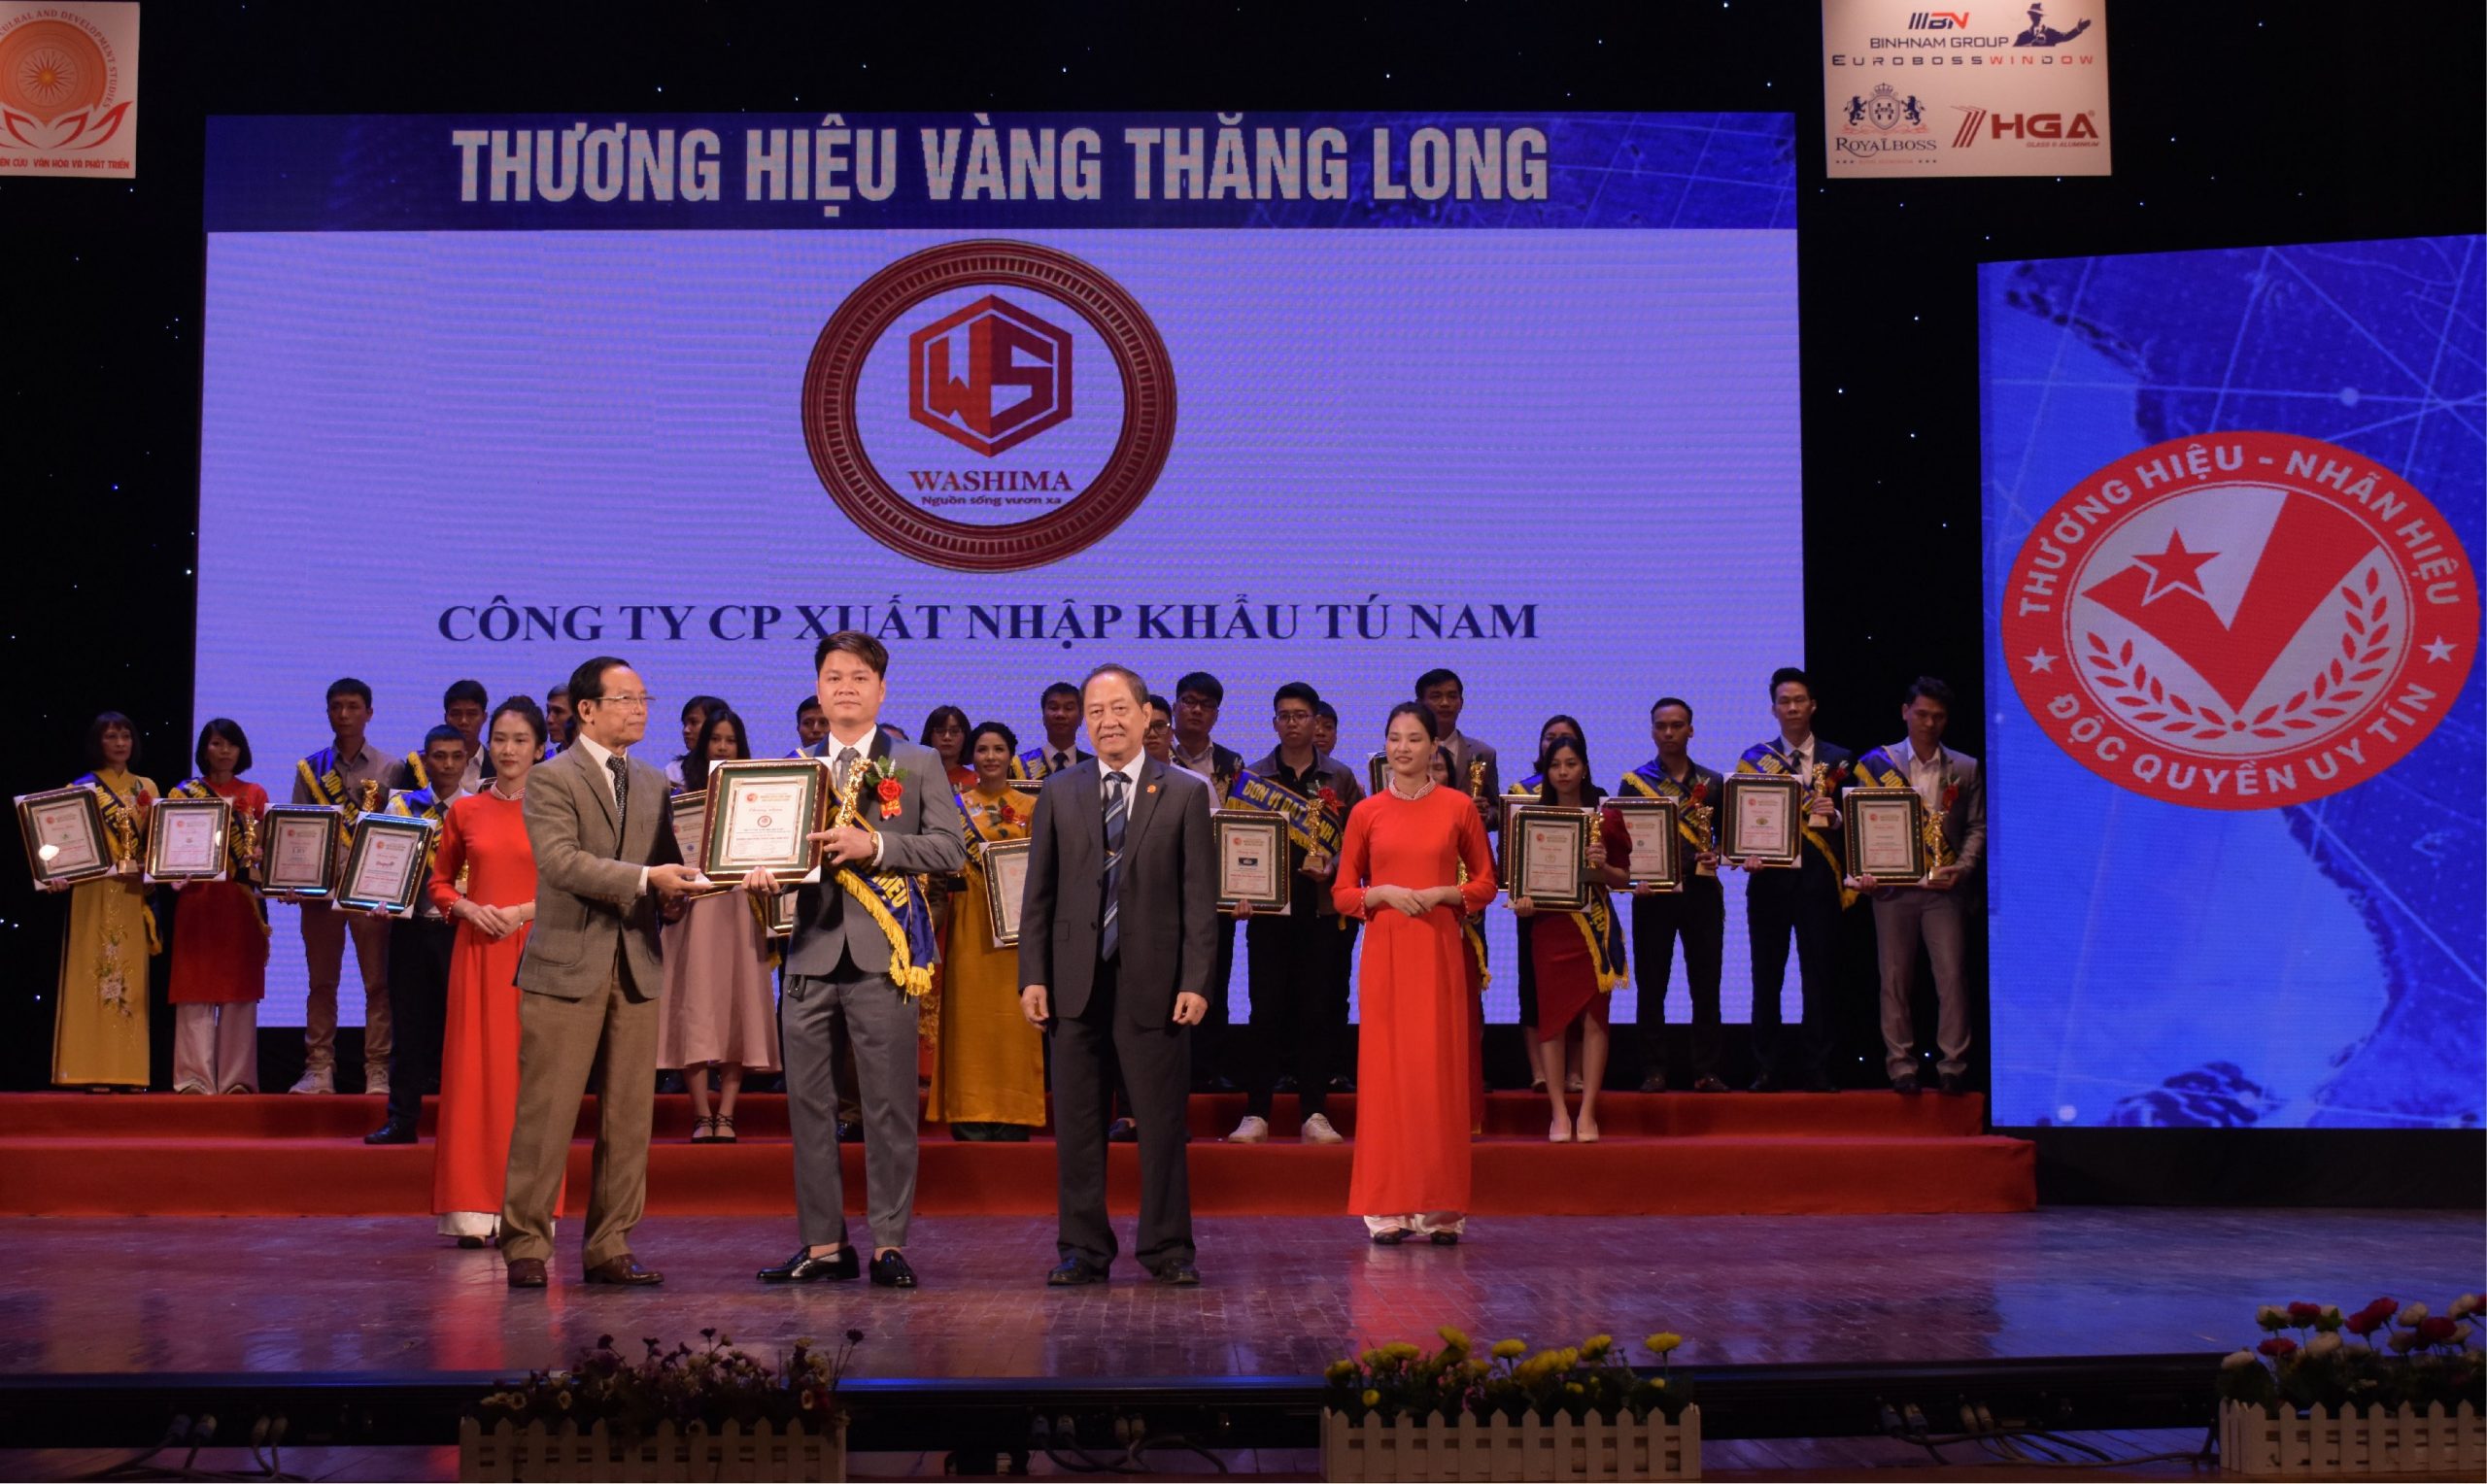 Ghế massage Washima được nhận giải thưởng thương hiệu Vàng doanh nghiệp Tại Hà Nội